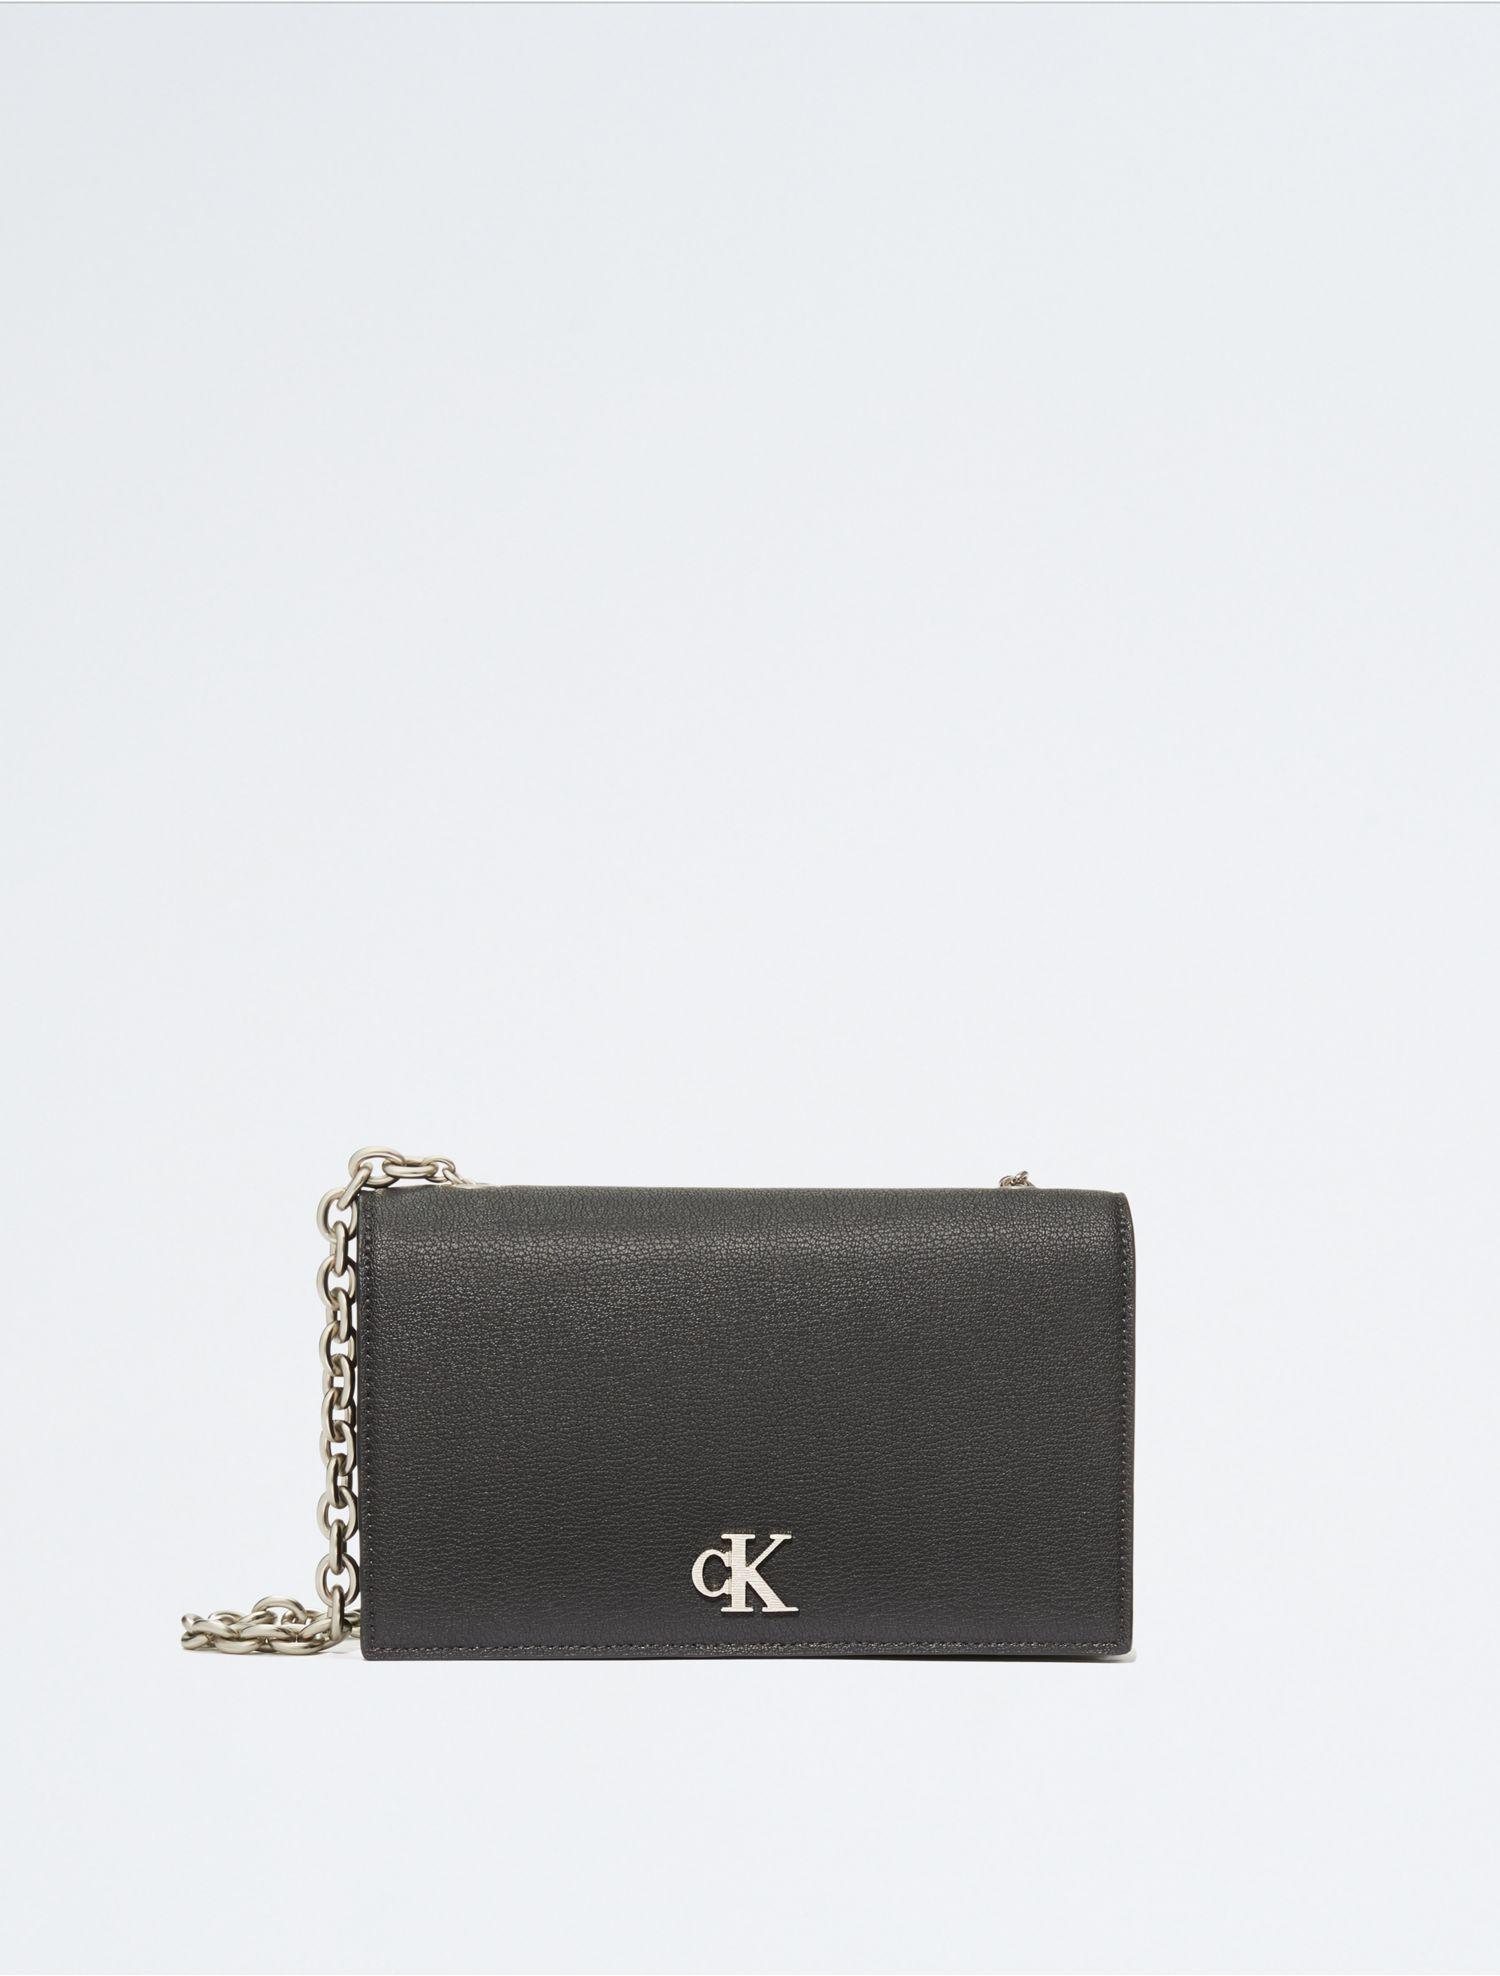 Calvin Klein Women's Elemental Chain Wallet in Black Beauty | Imported